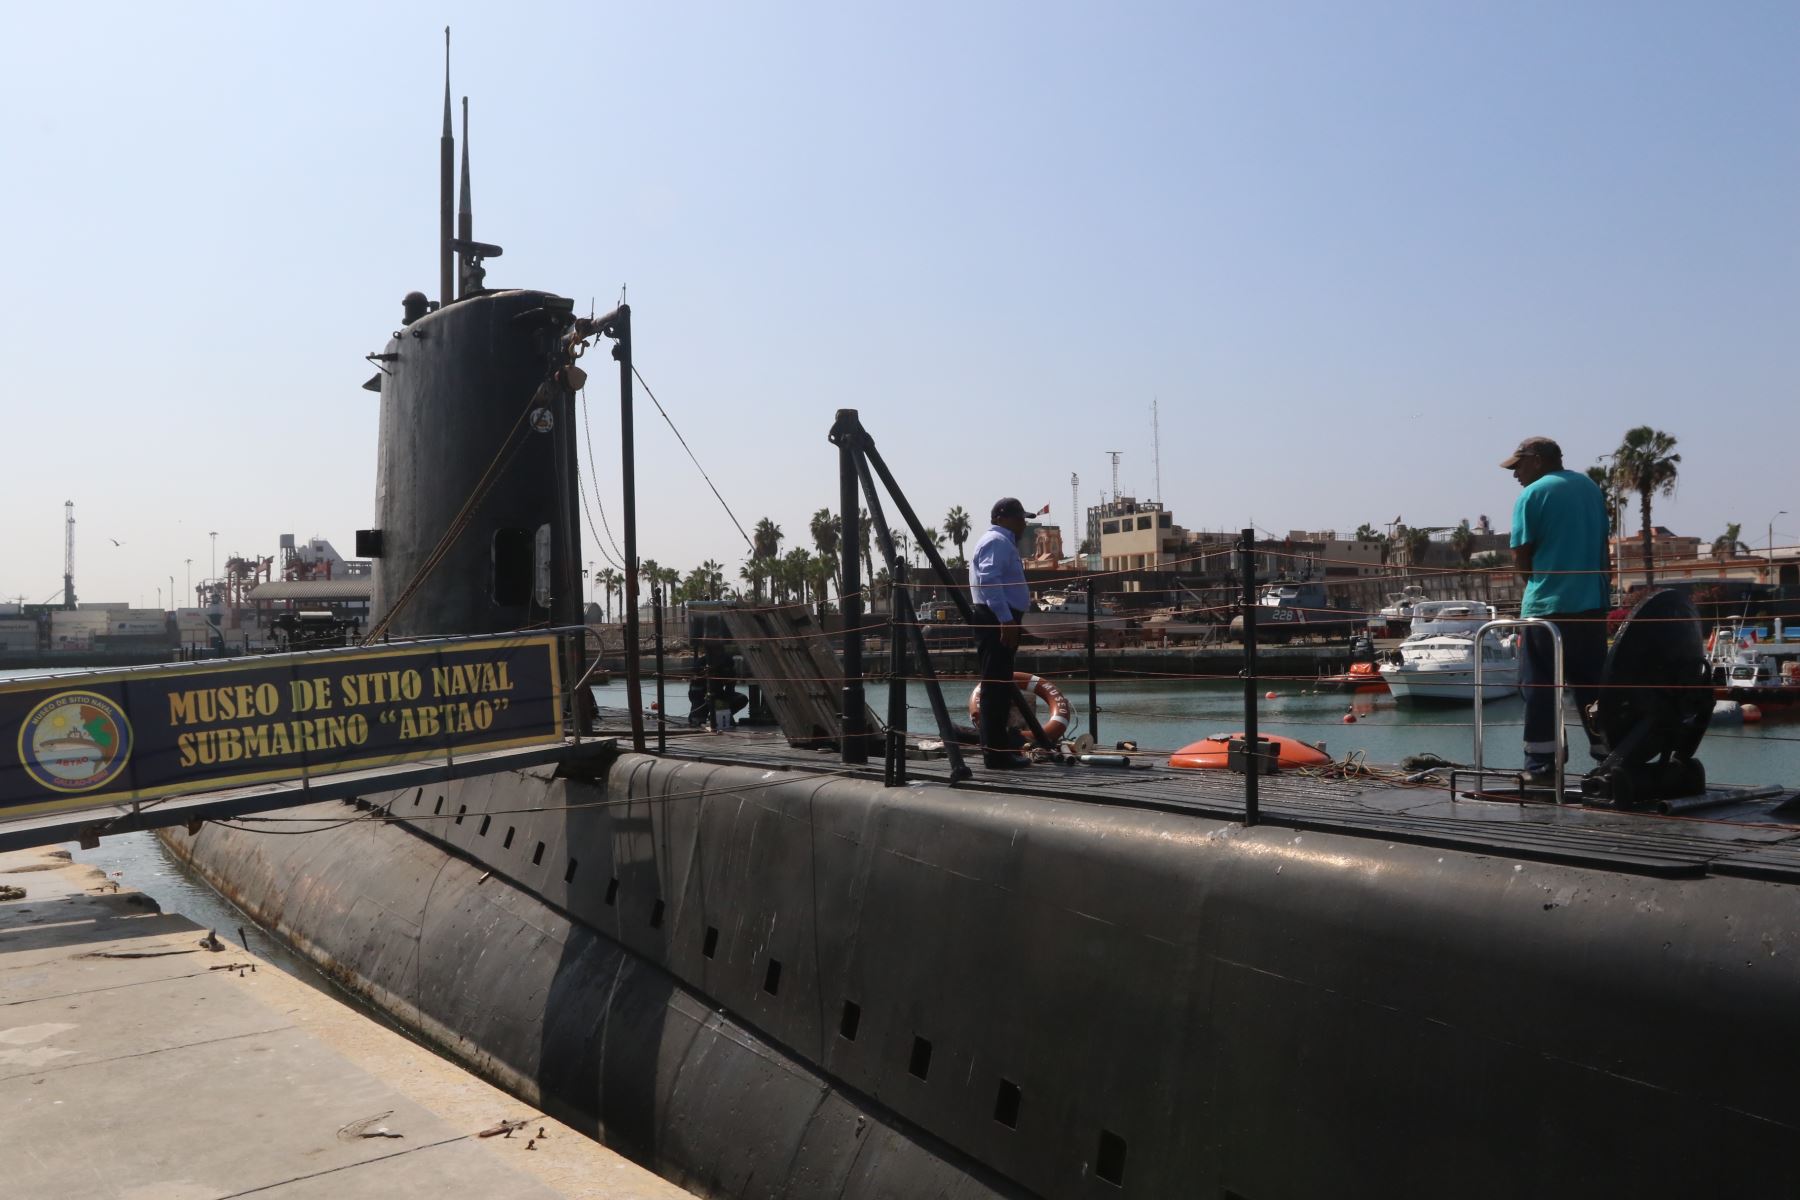 El submarino Abtao realizó 5,003 inmersiones a lo largo de todos sus años de operatividad. Foto: ANDINA/Héctor Vinces